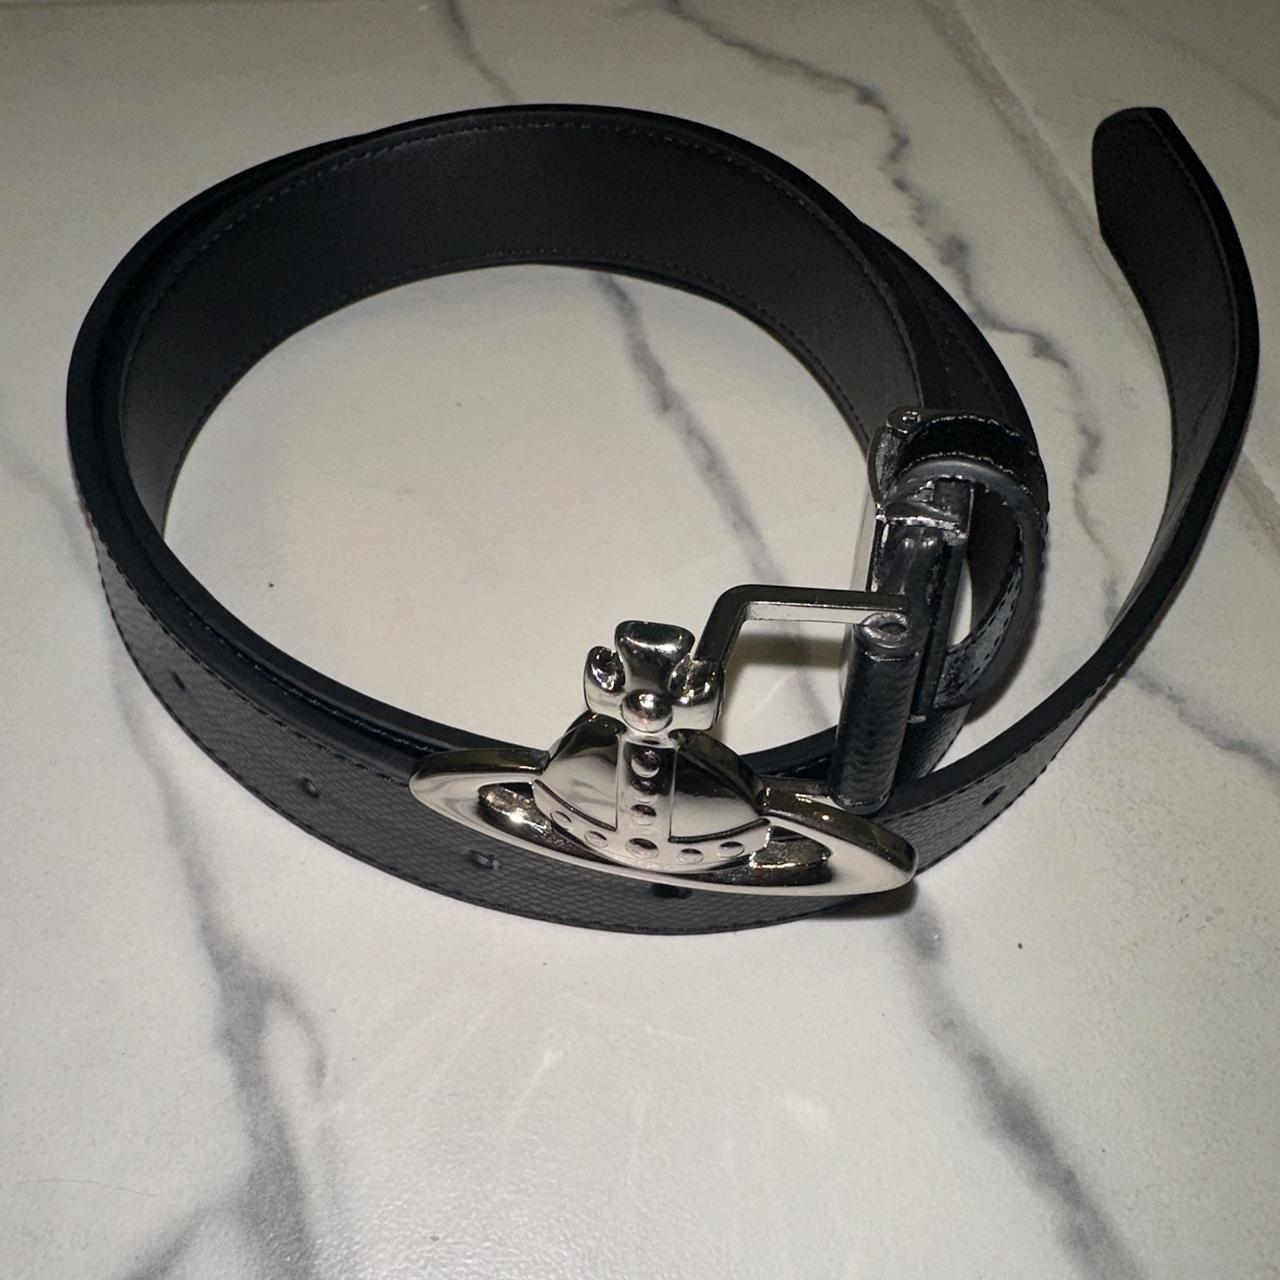 Vivienne Westwood Leather Orb Belt -OS, can fit... - Depop